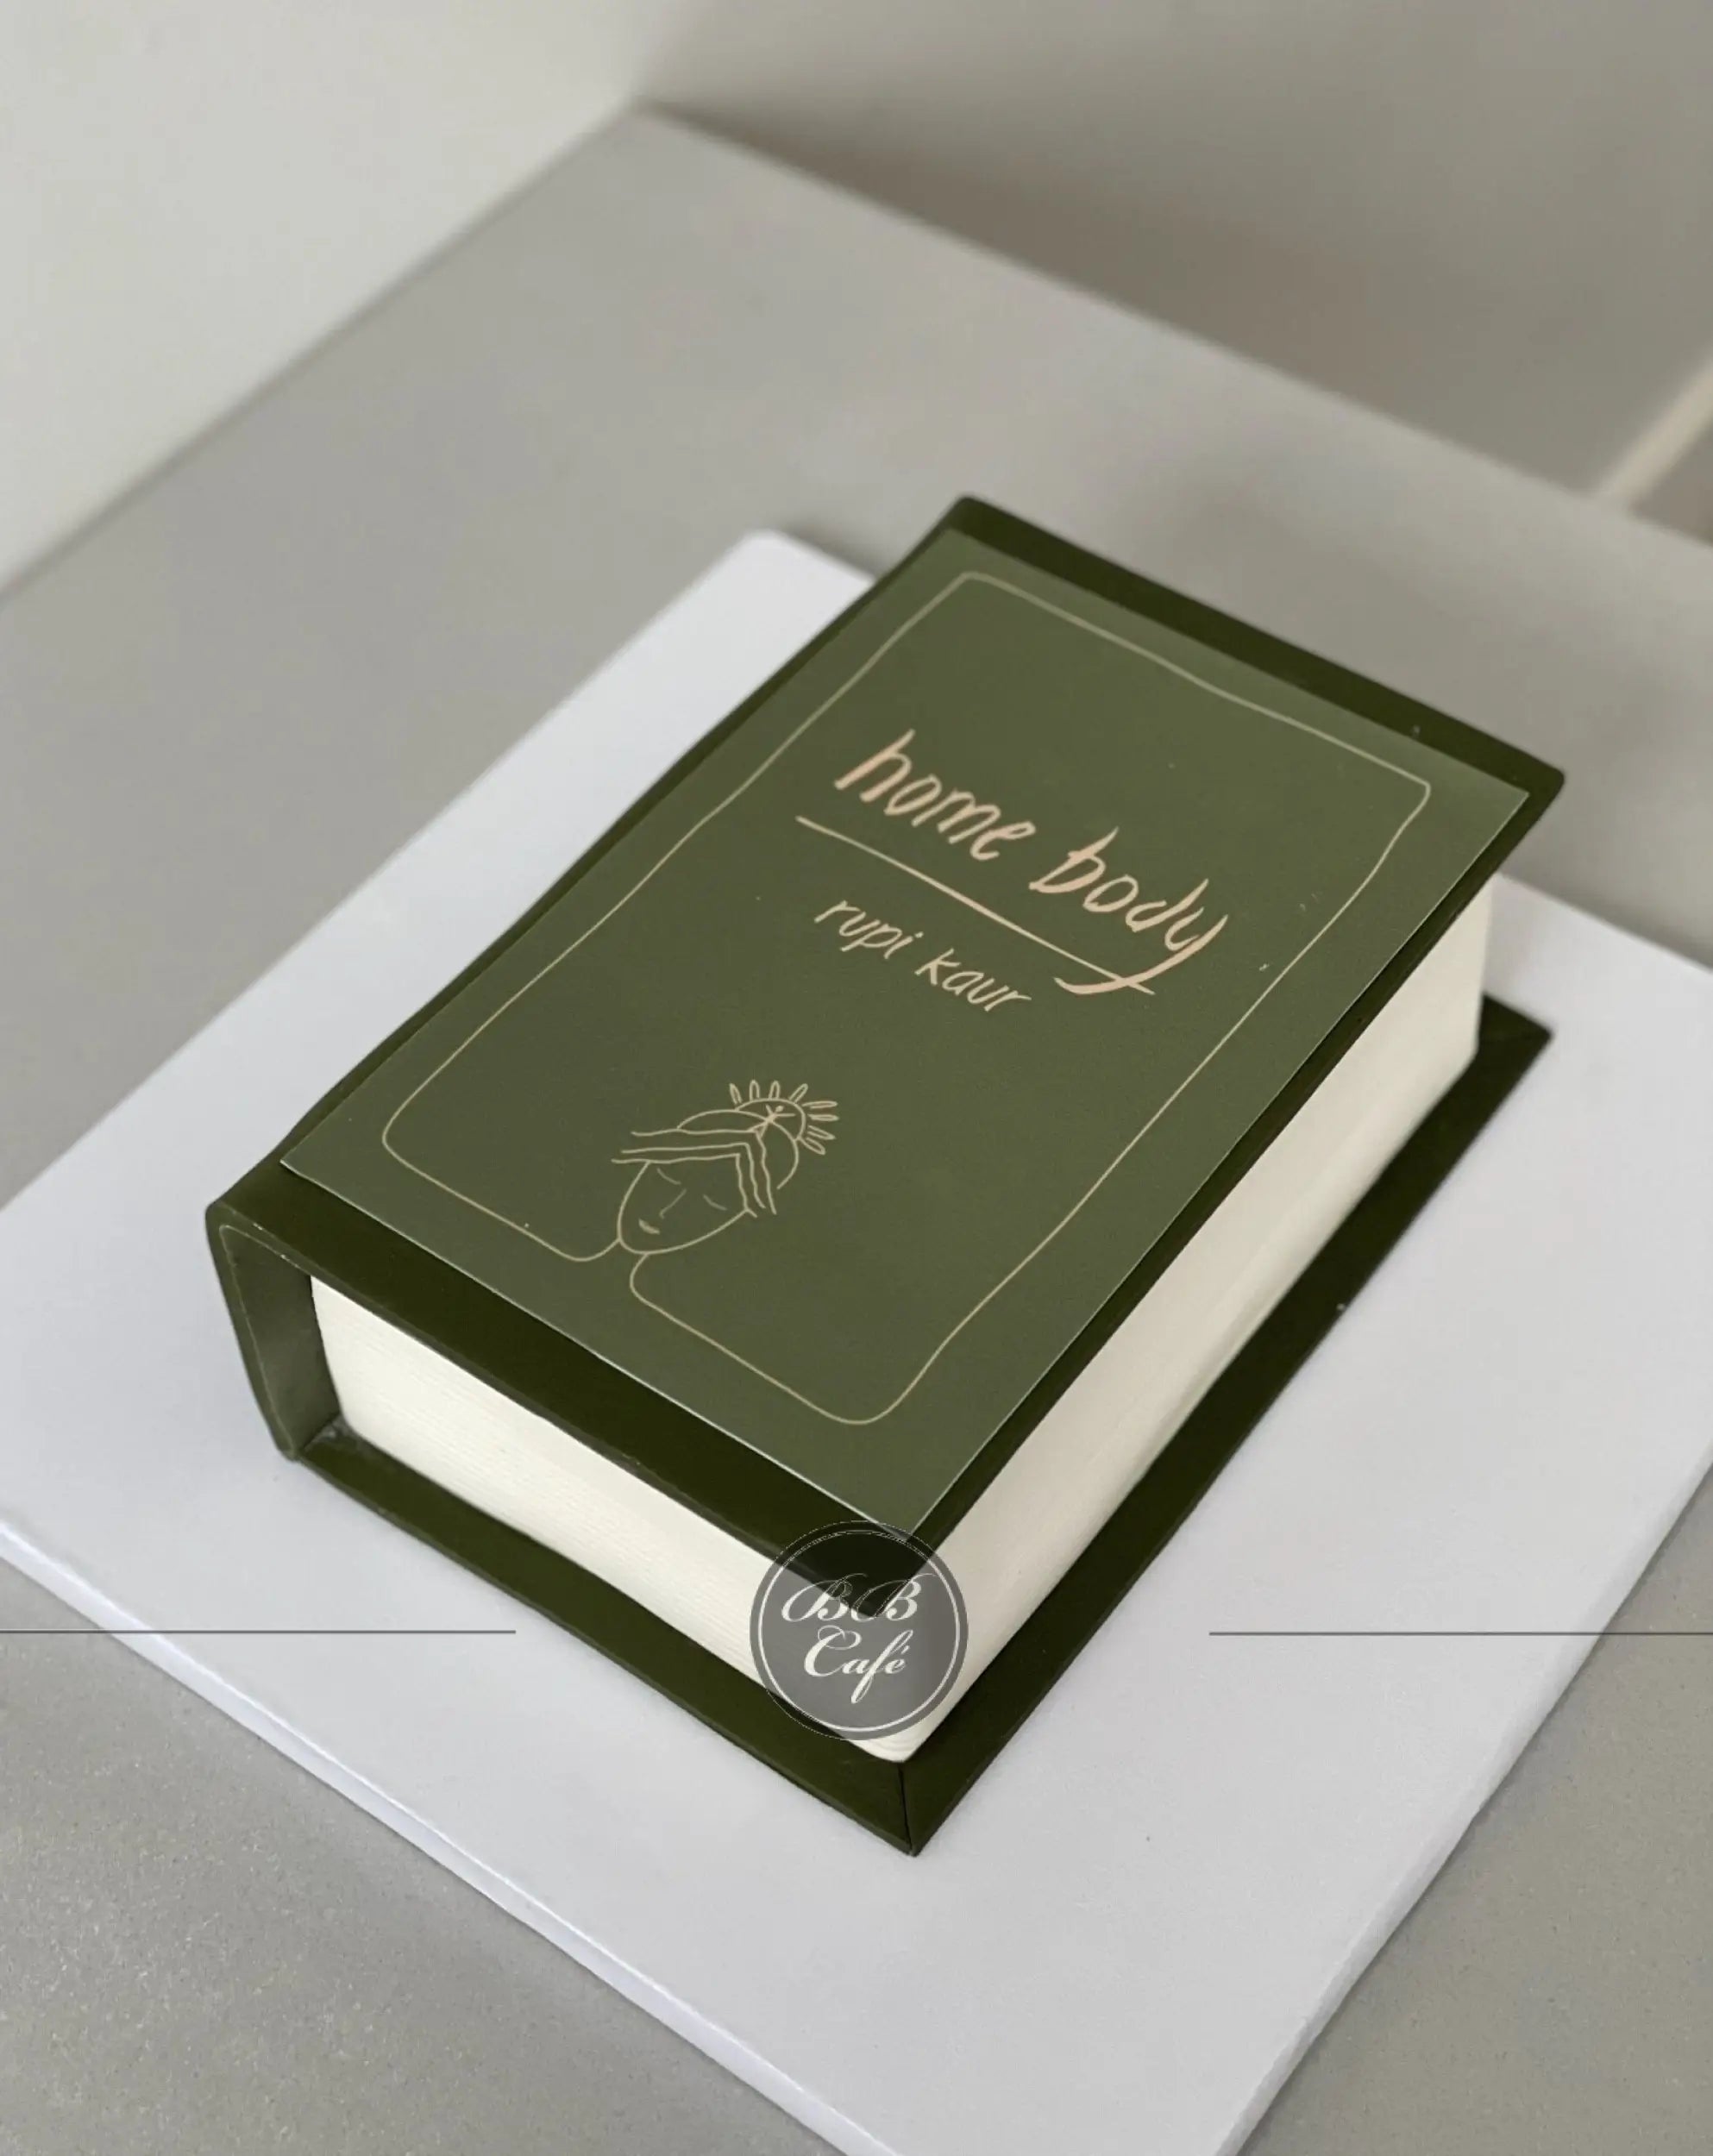 Book in fondant - custom cake